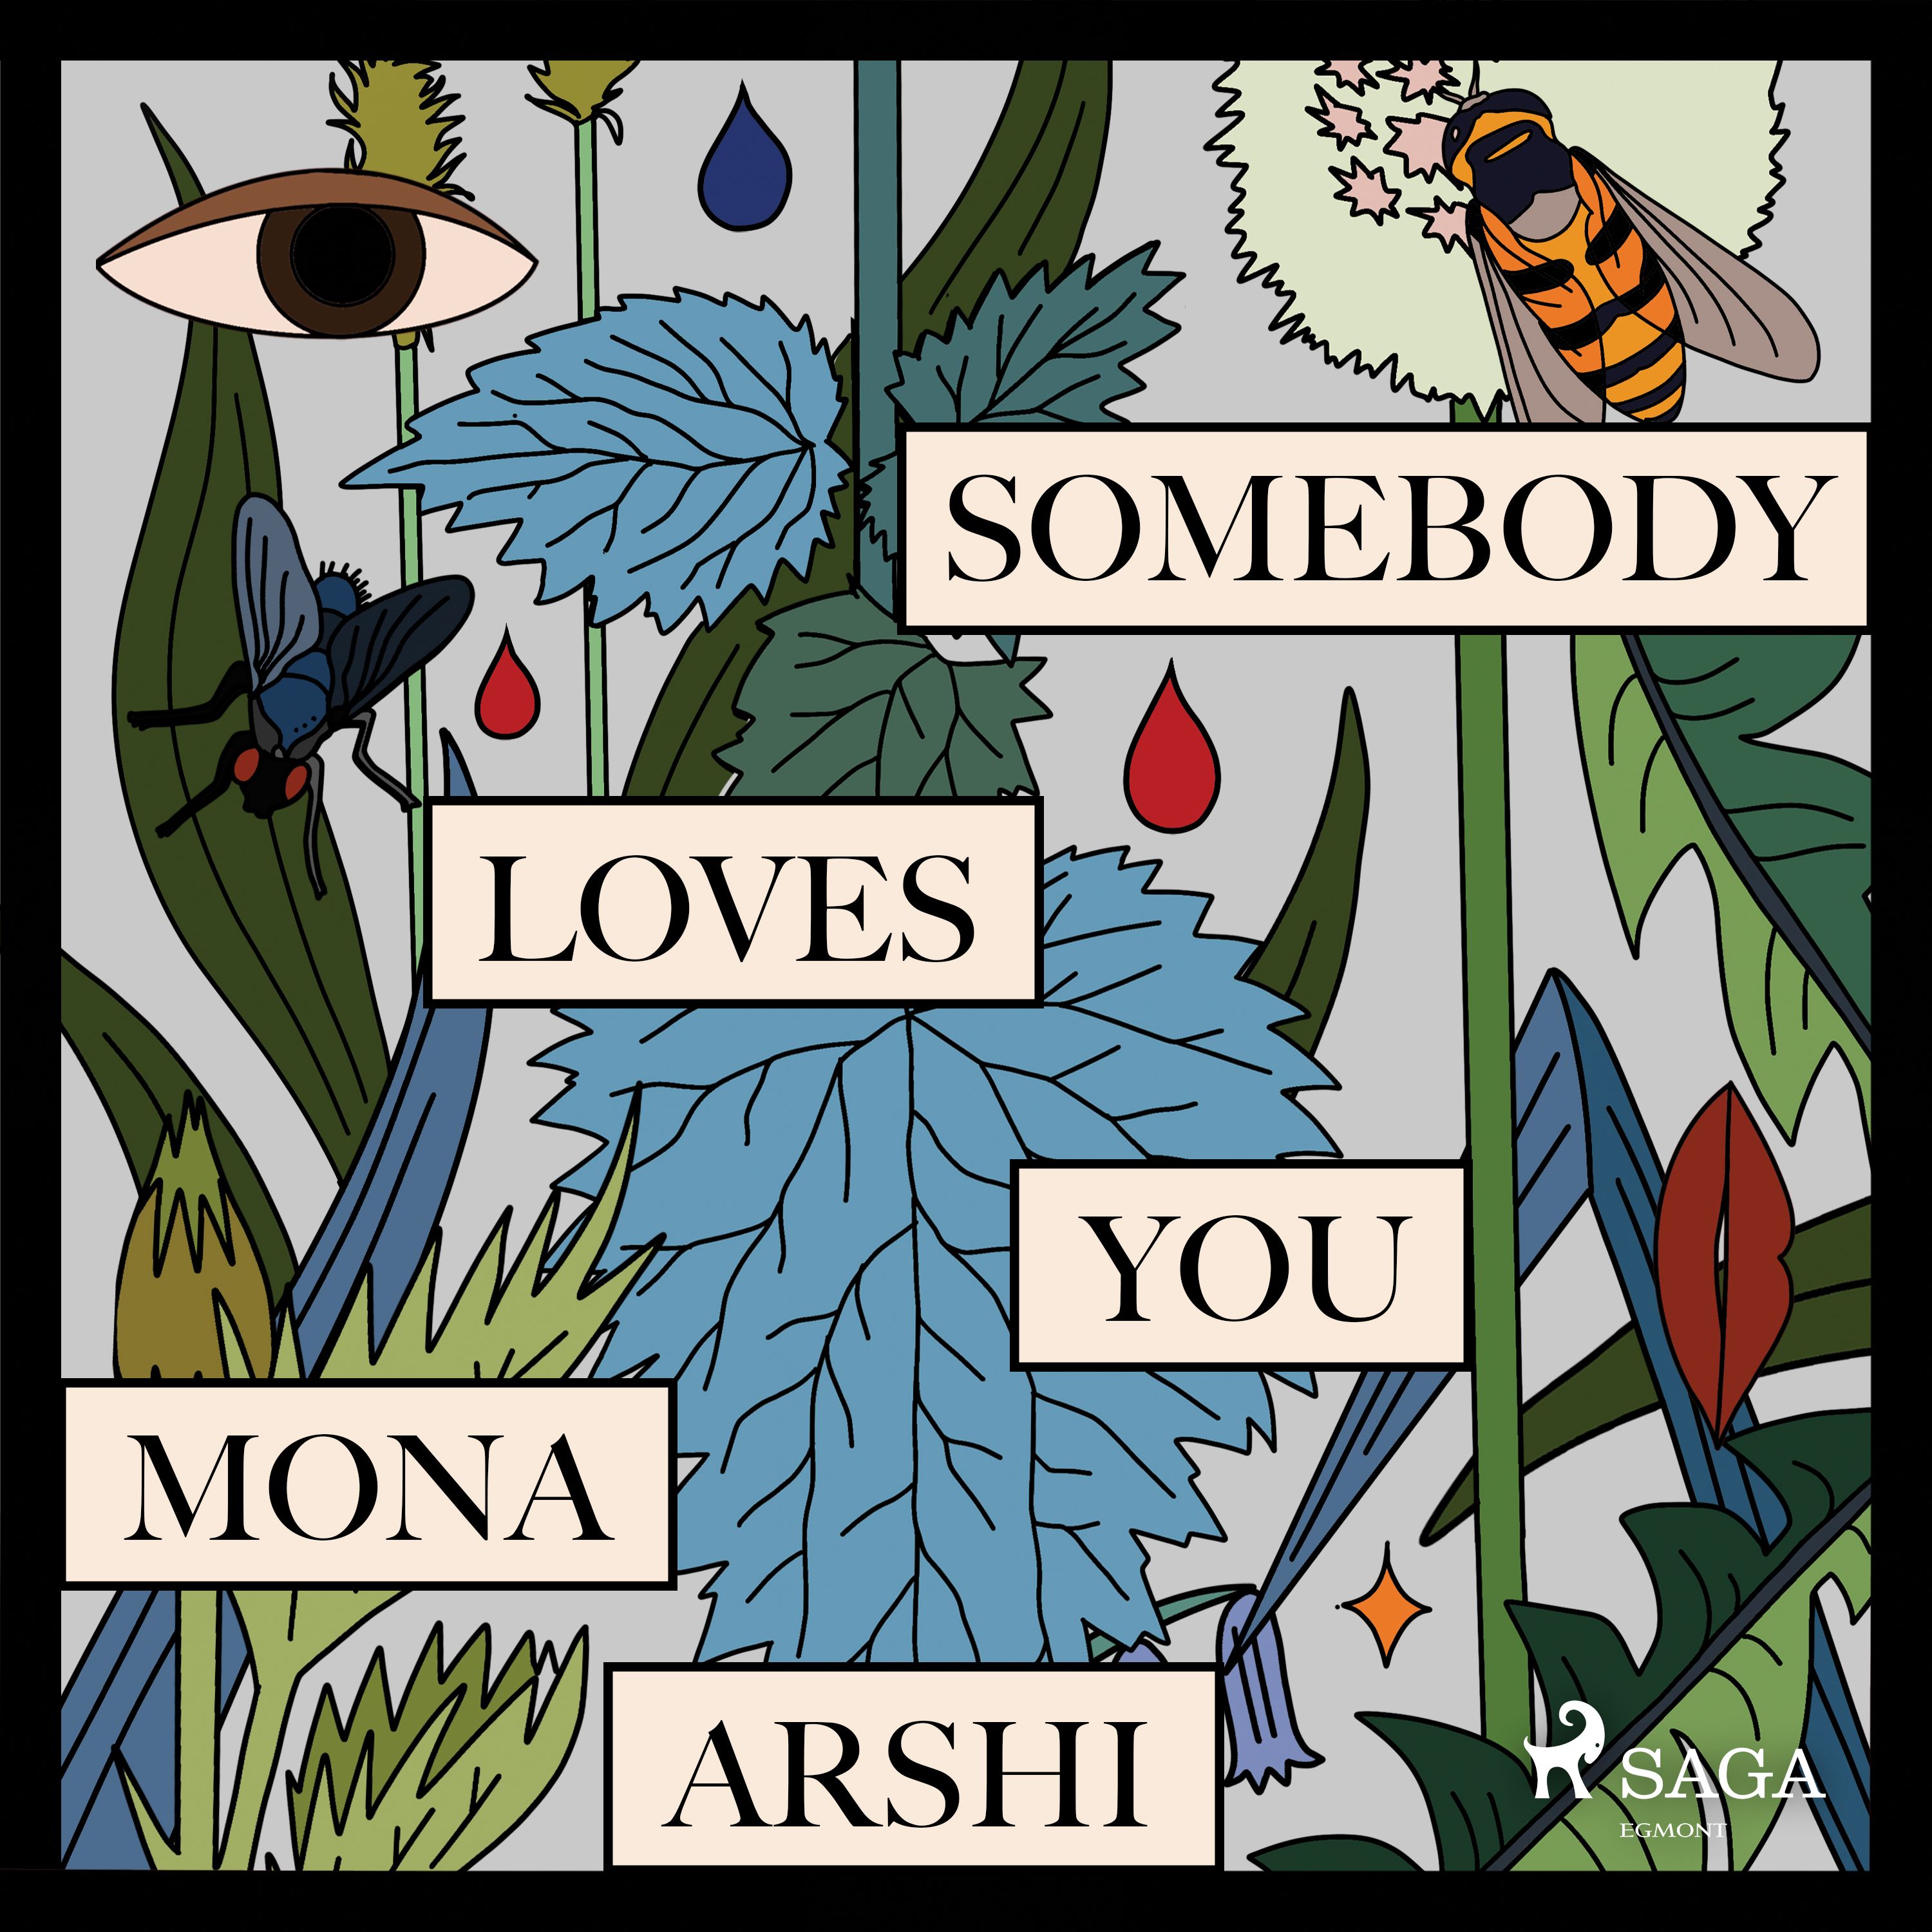 Somebody Loves You, ljudbok av Mona Arshi